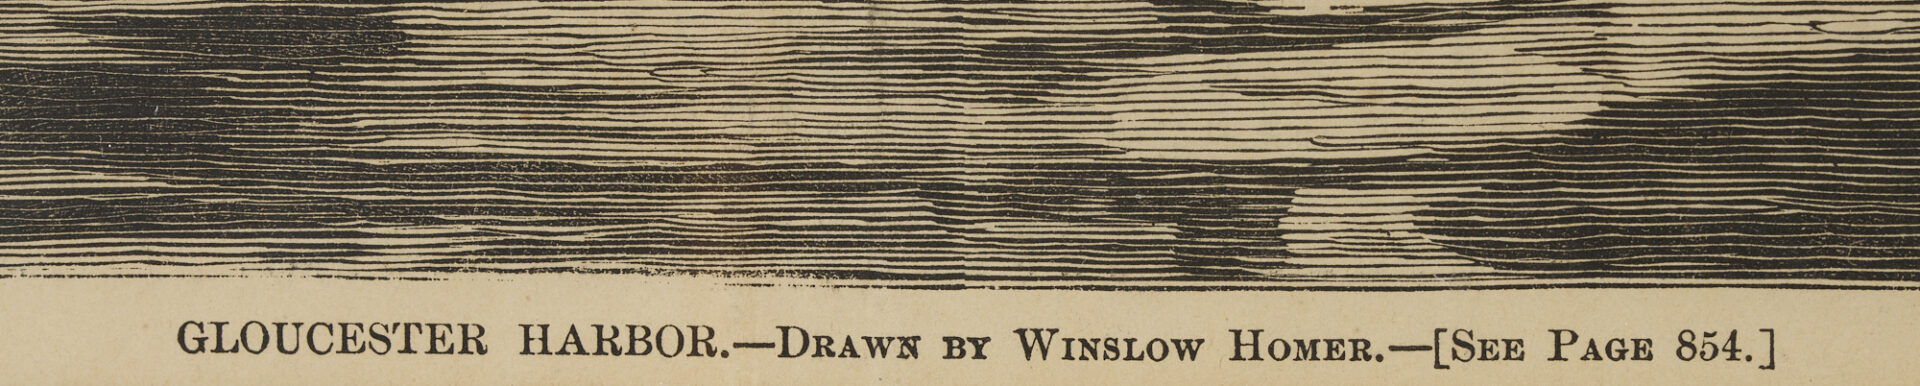 Lot 885: 3 Framed Illustration Prints after Winslow Homer